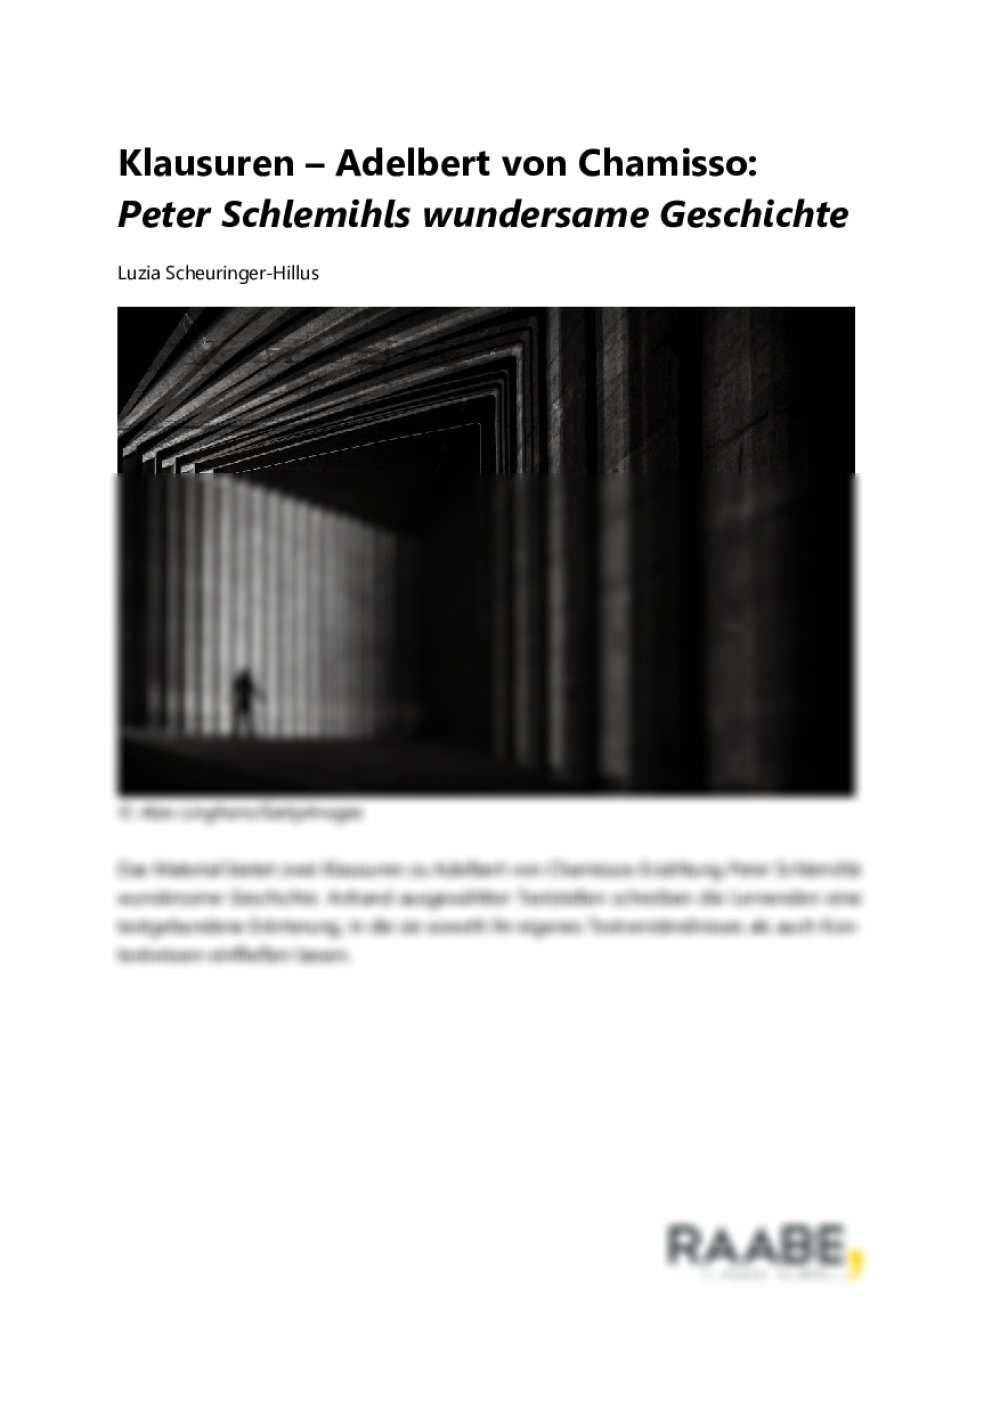 Klausur – Peter Schlemihls wundersame Geschichte - Seite 1